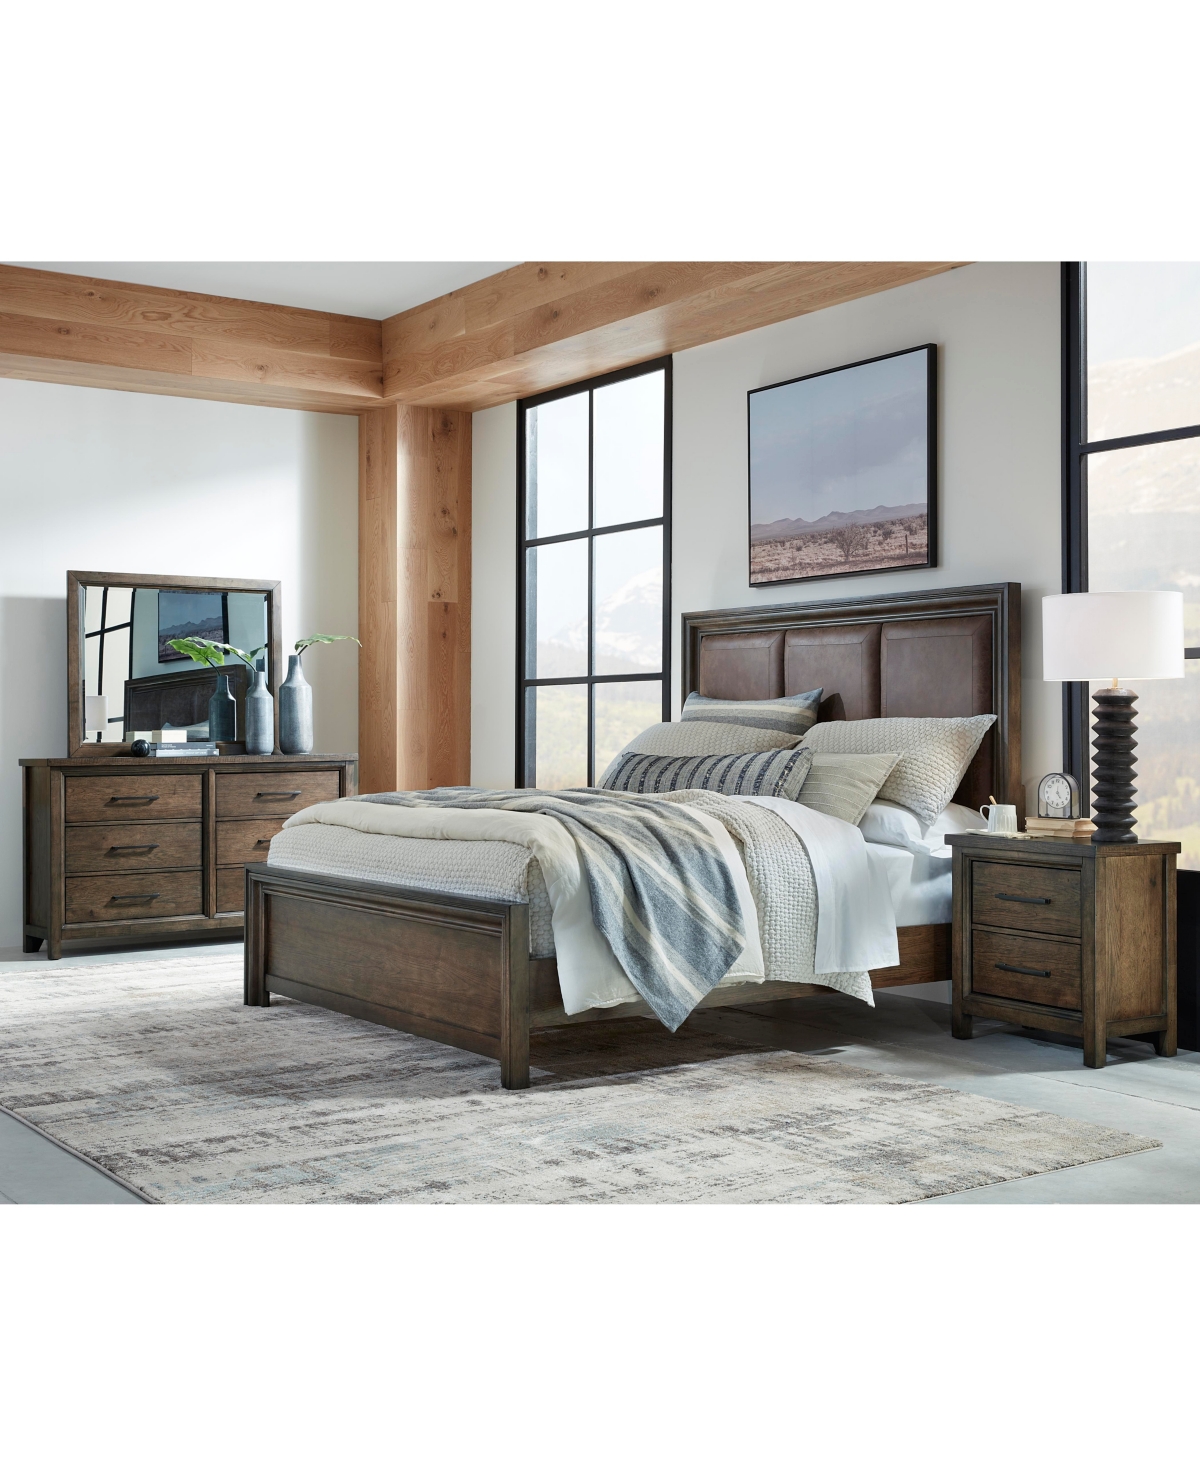 Denman Bedroom 3-Pc Set (King + Dresser + Nightstand)